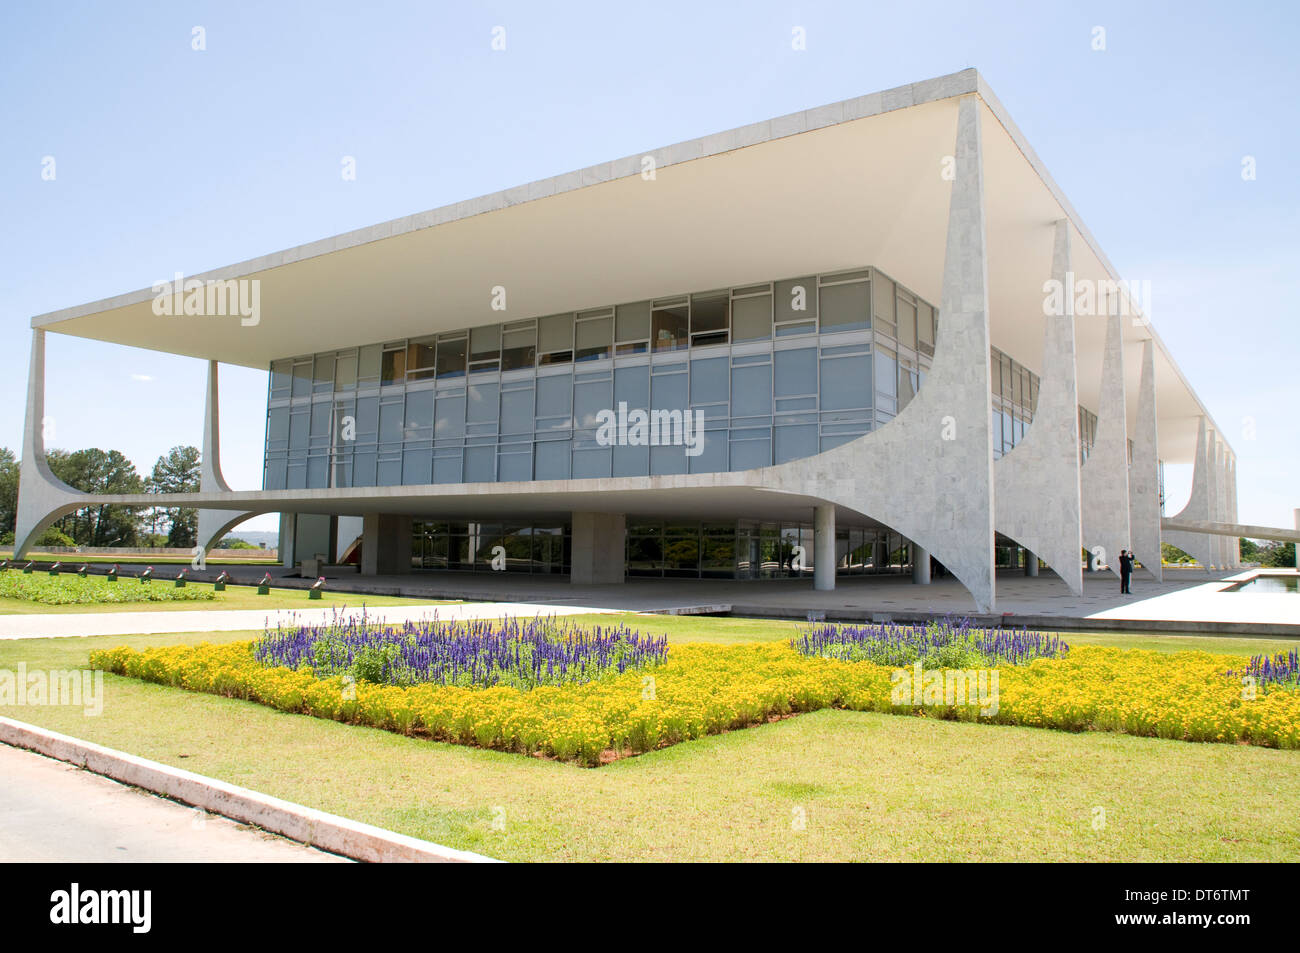 Le Palacio do Planalto (Palais Présidentiel) est l'office du président du Brésil à Brasilia, Brésil Banque D'Images